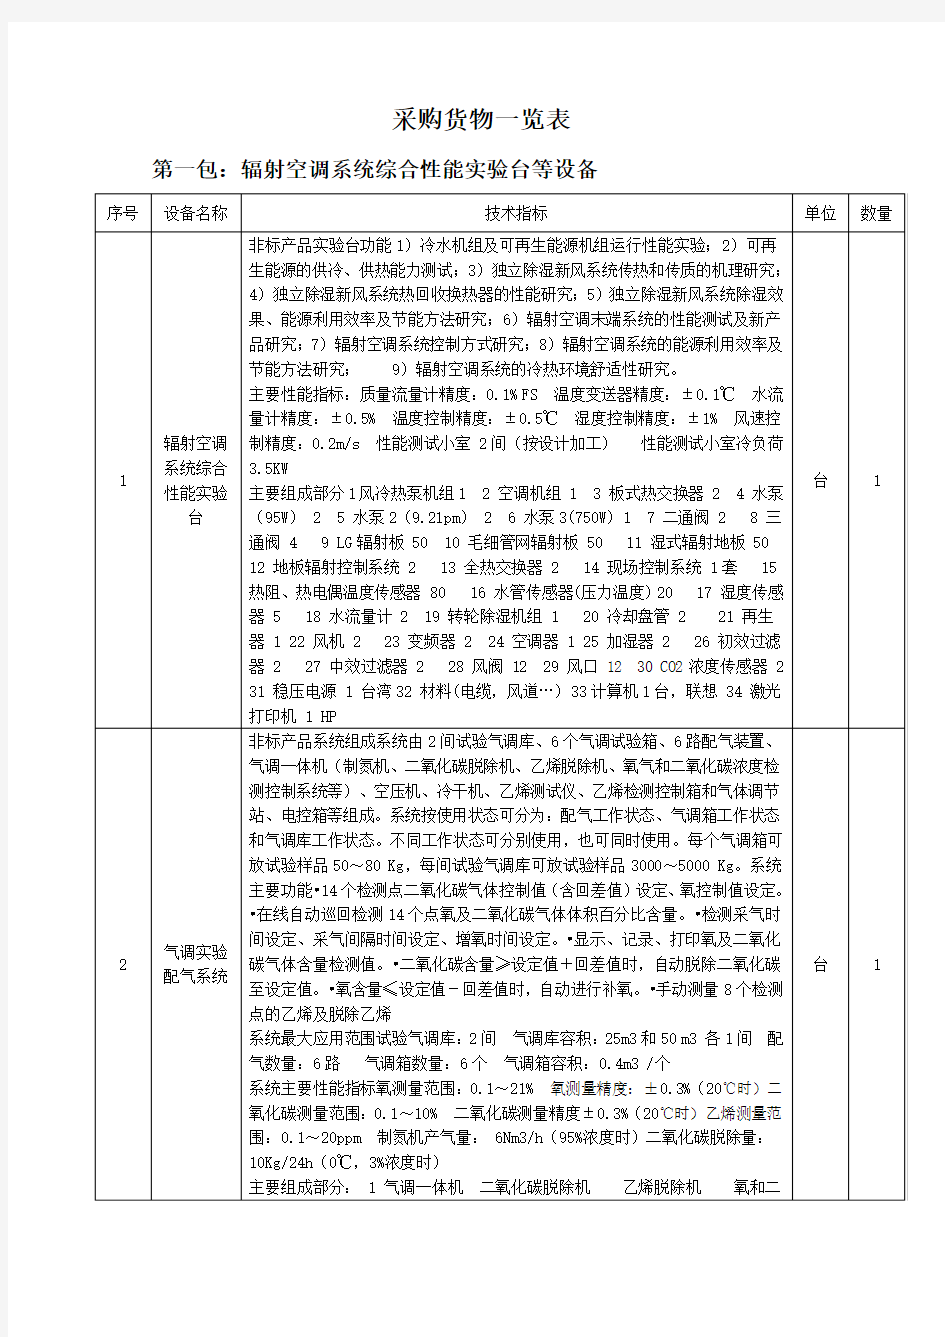 [实用表格]采购货物一览表-中国政府采购网首页